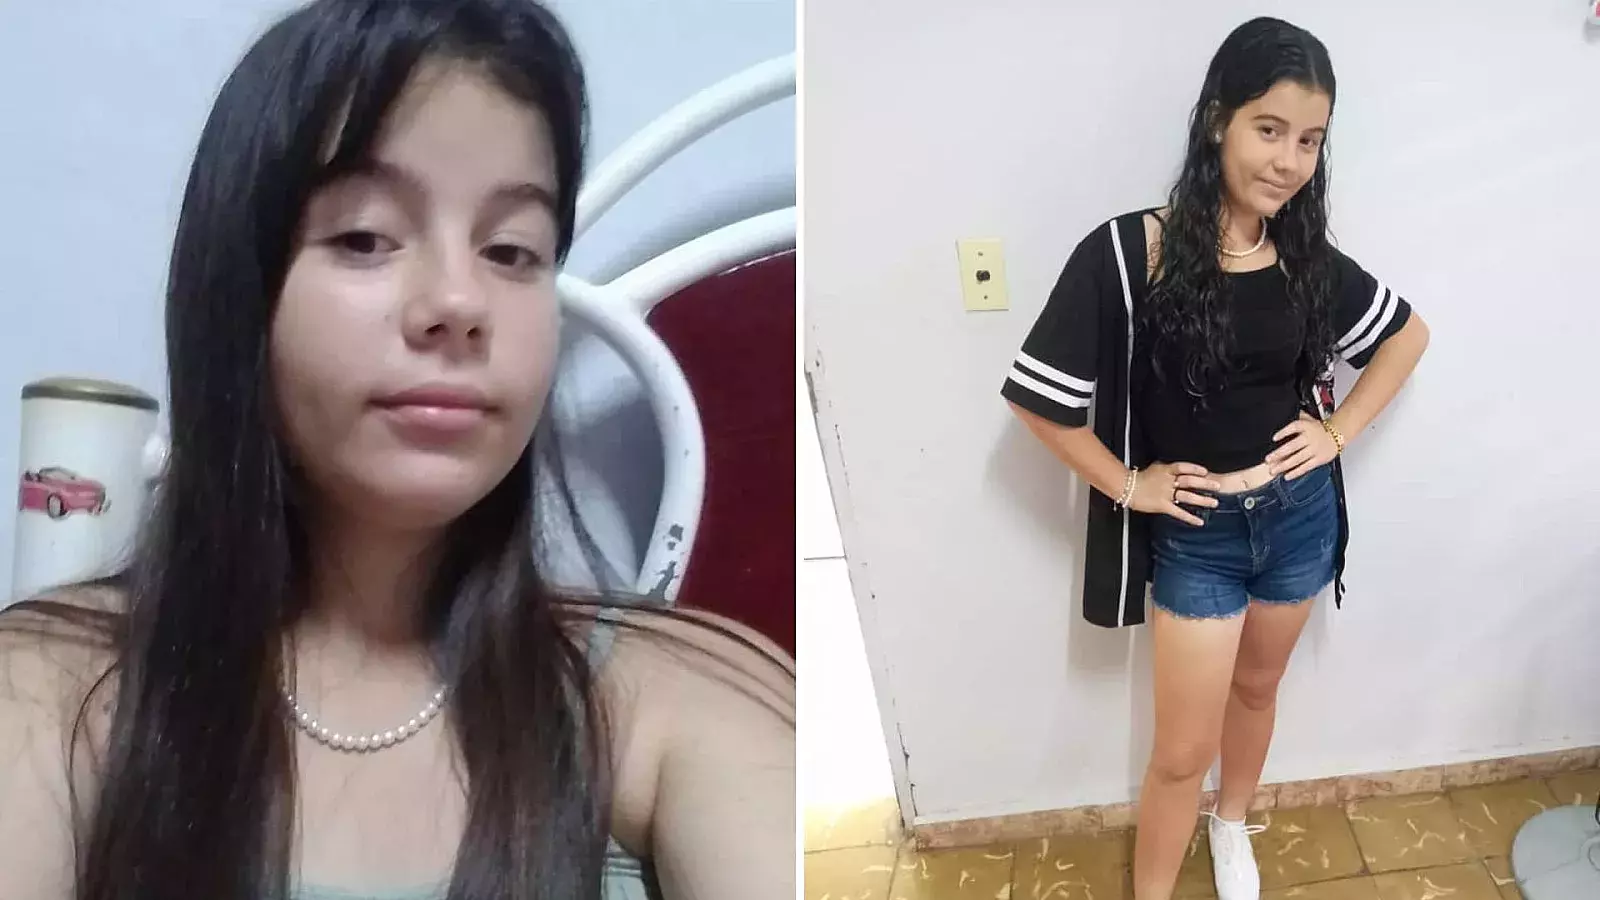 Priscila Gómez Valladares, de 13 años de edad